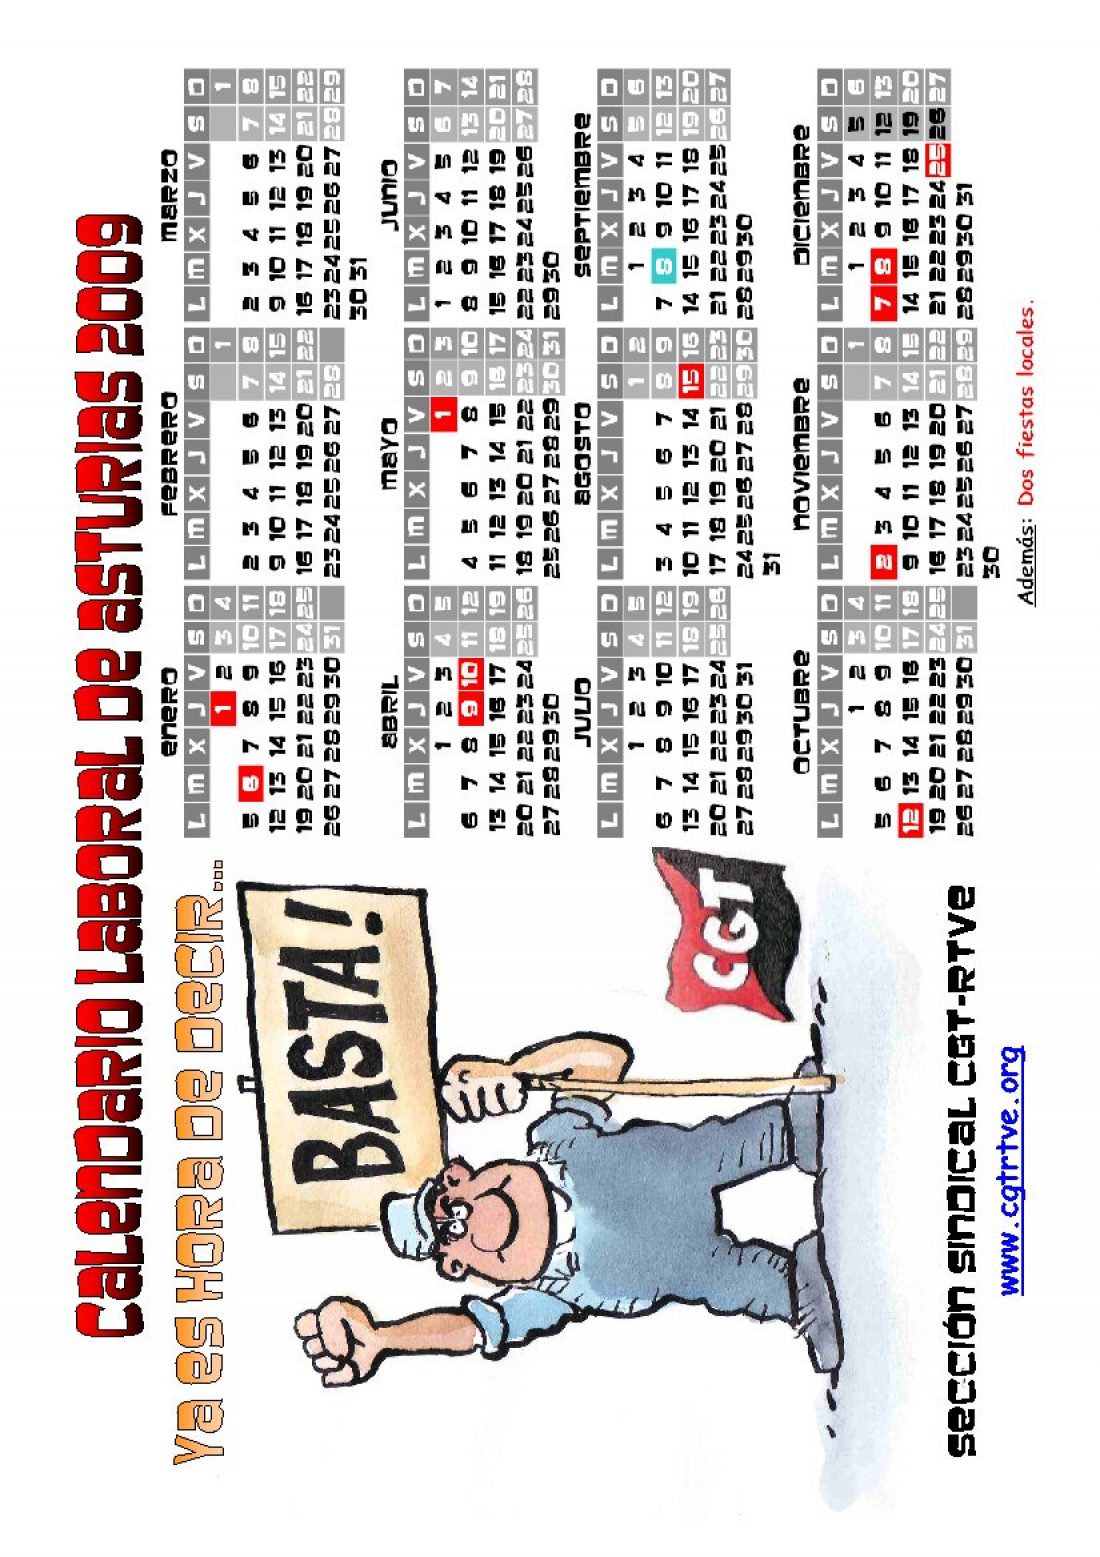 PDF cegetero del calendario laboral 2009 de Asturies